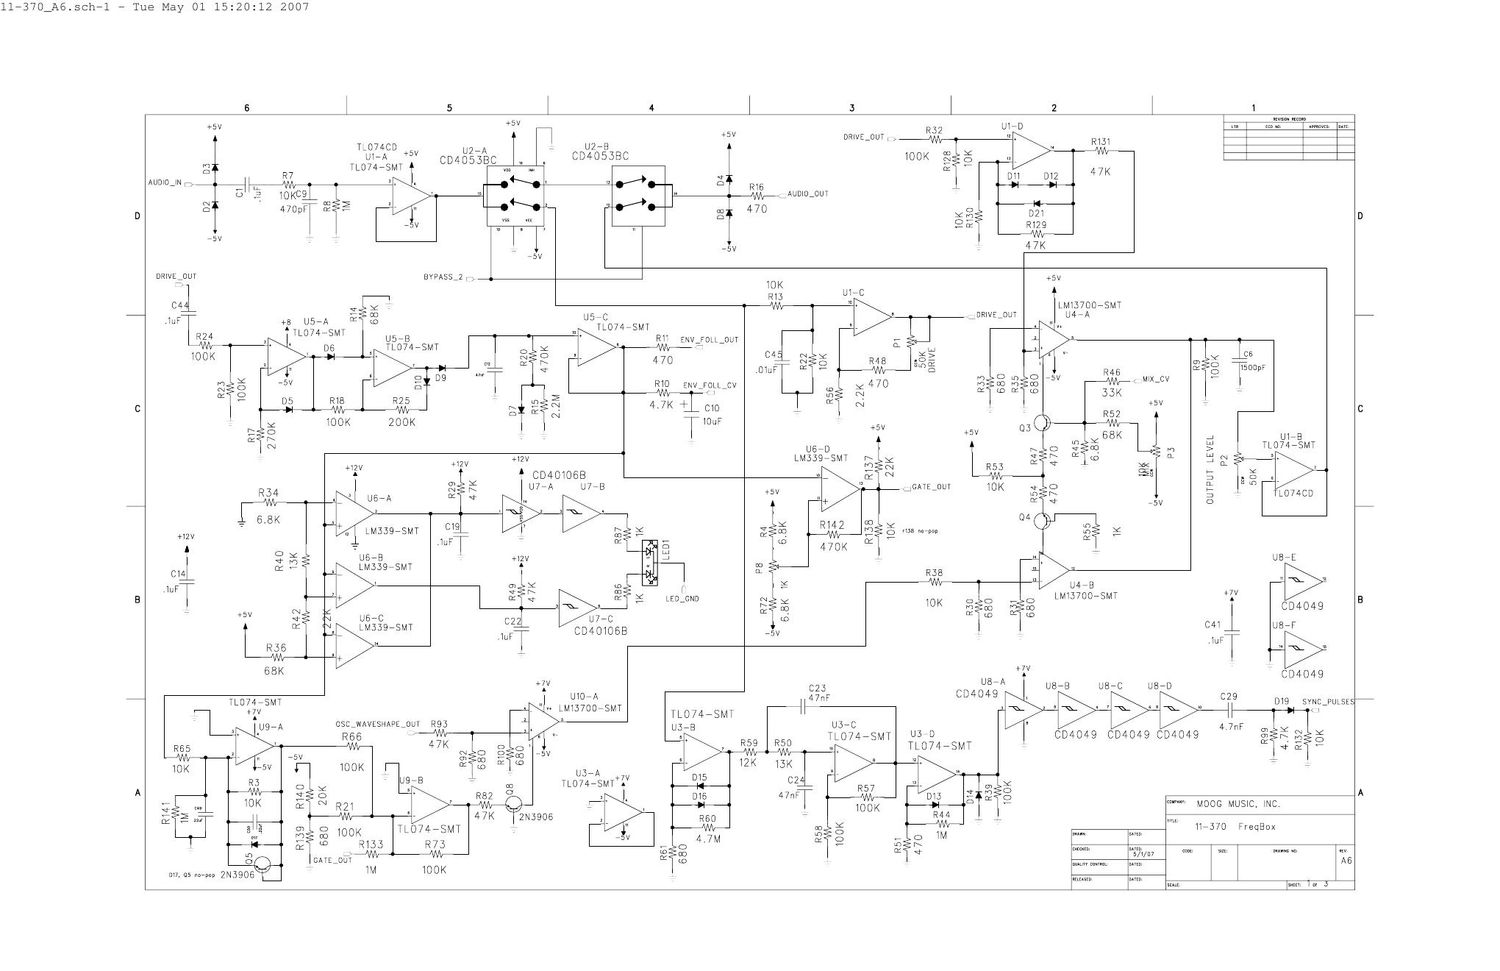 moog mf 107 schematic